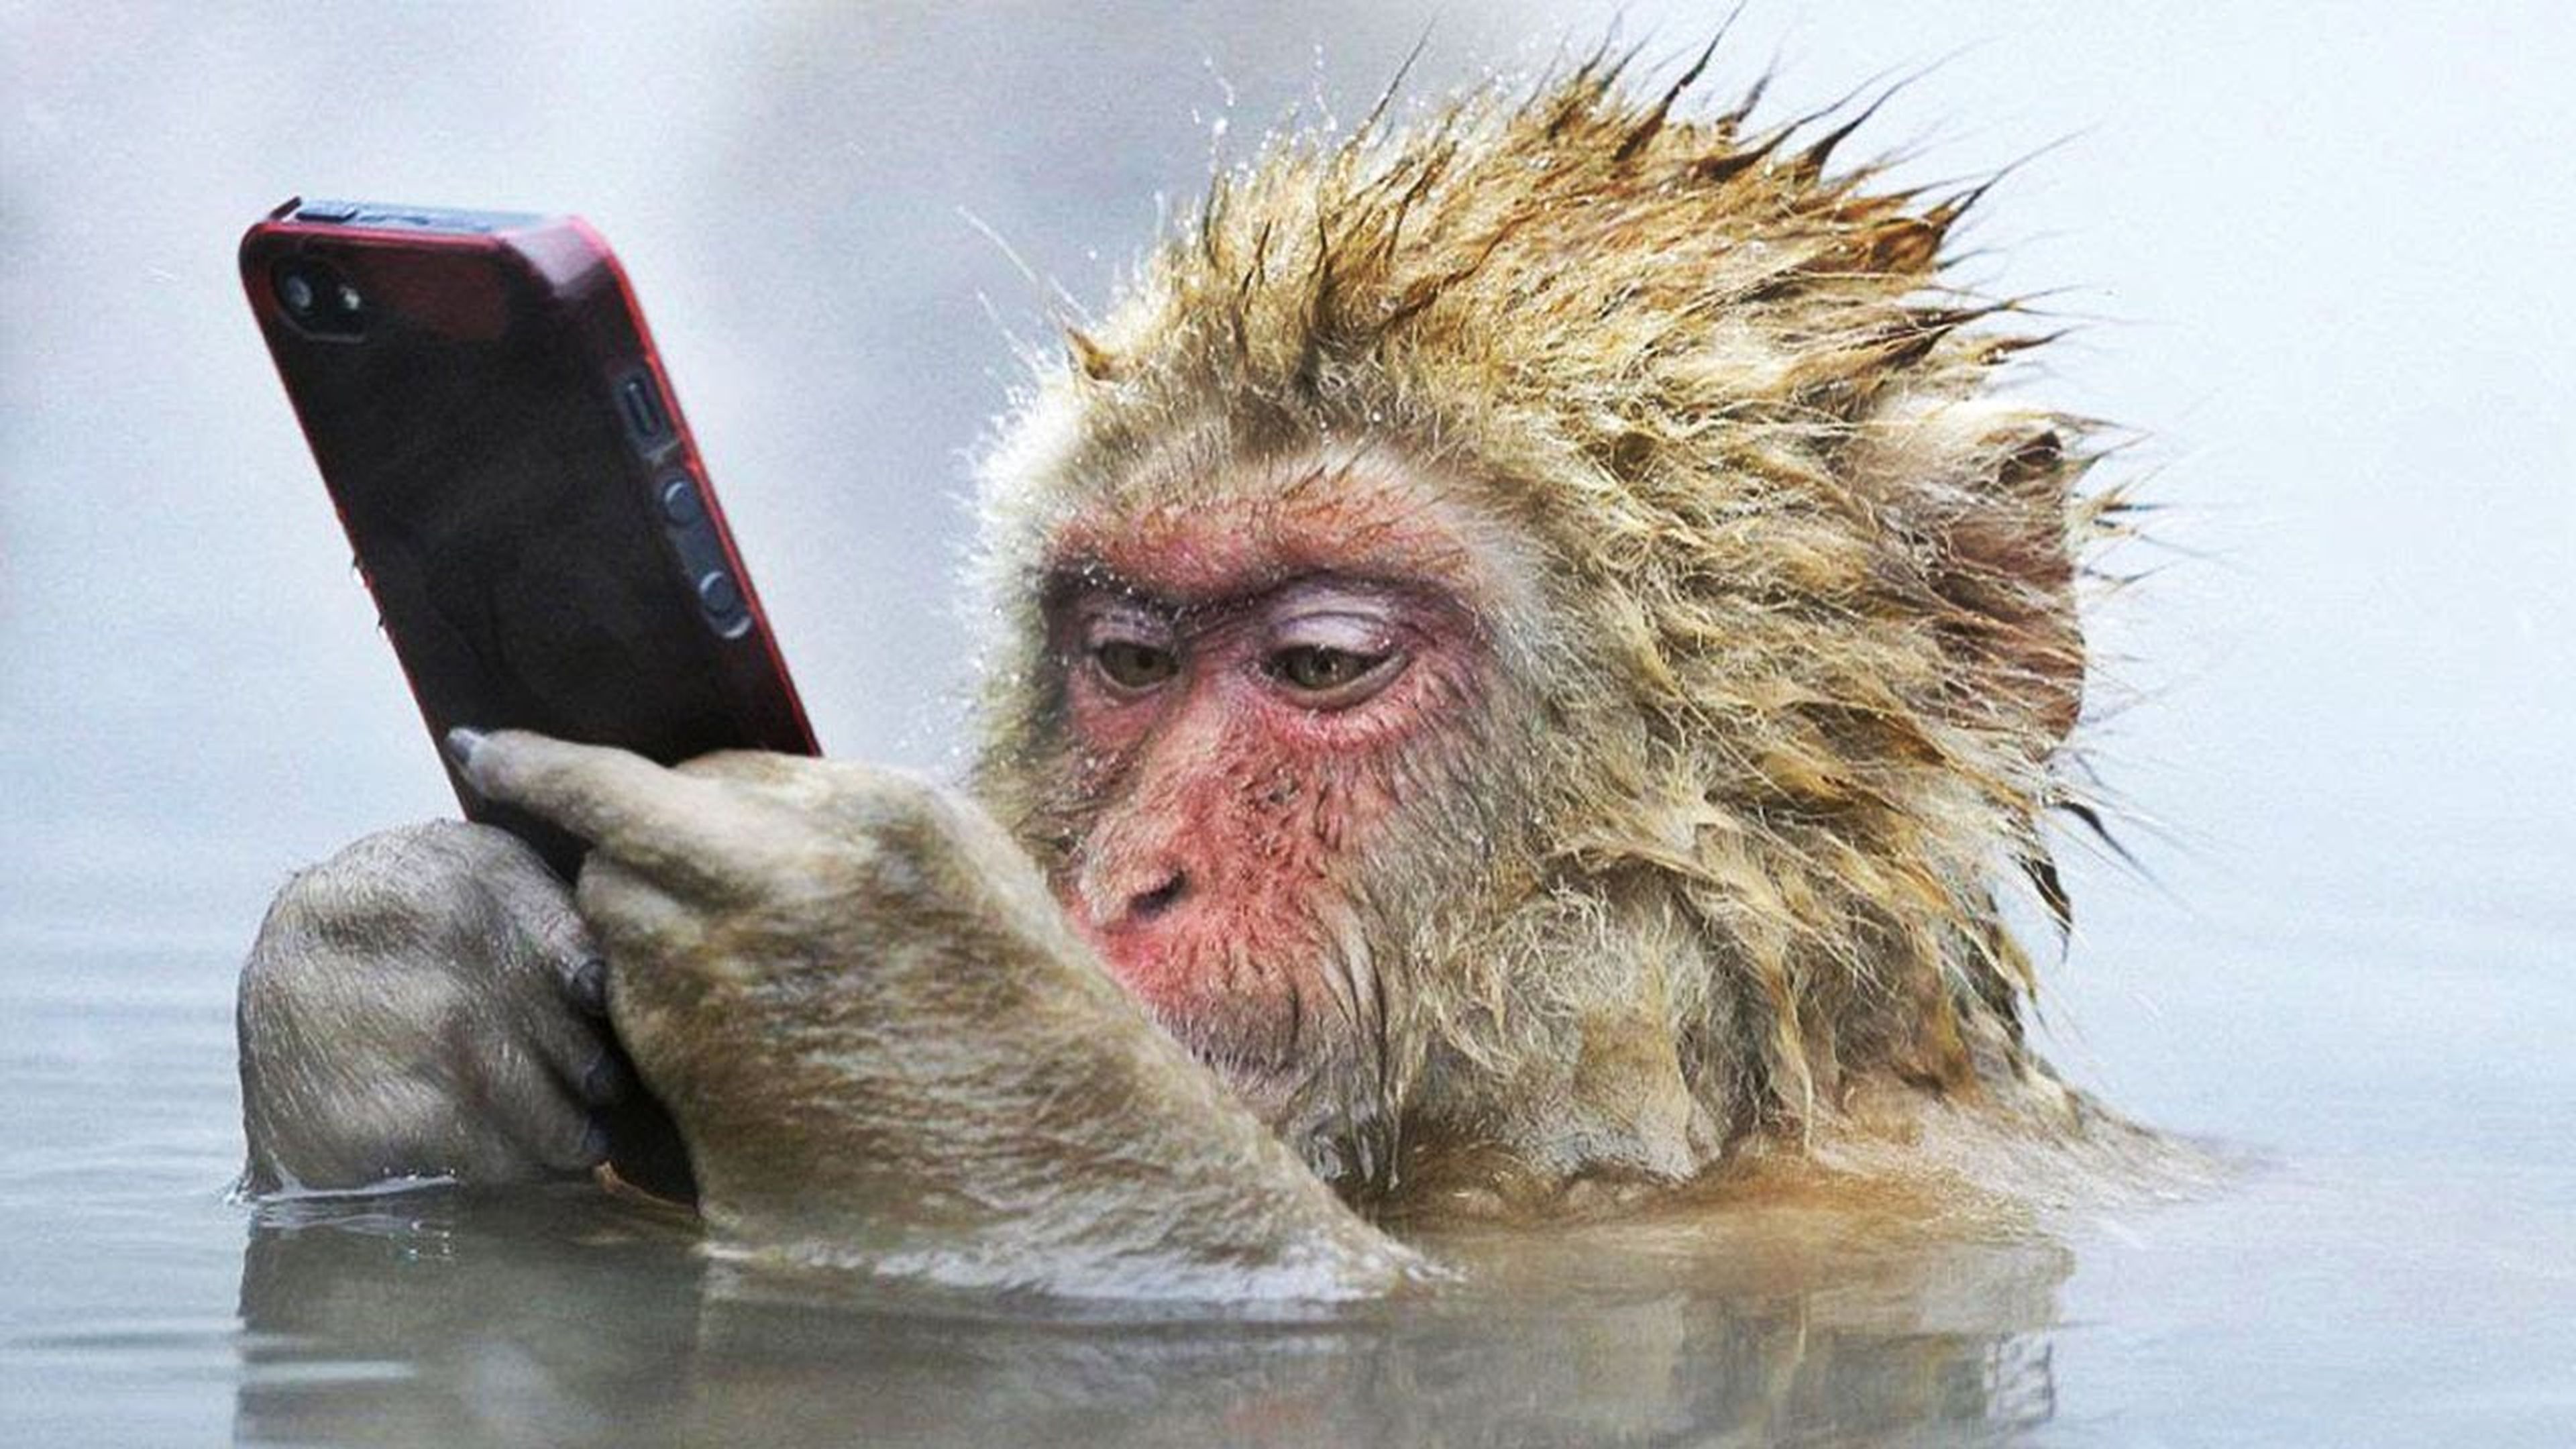 Macaco japonés con smartphone